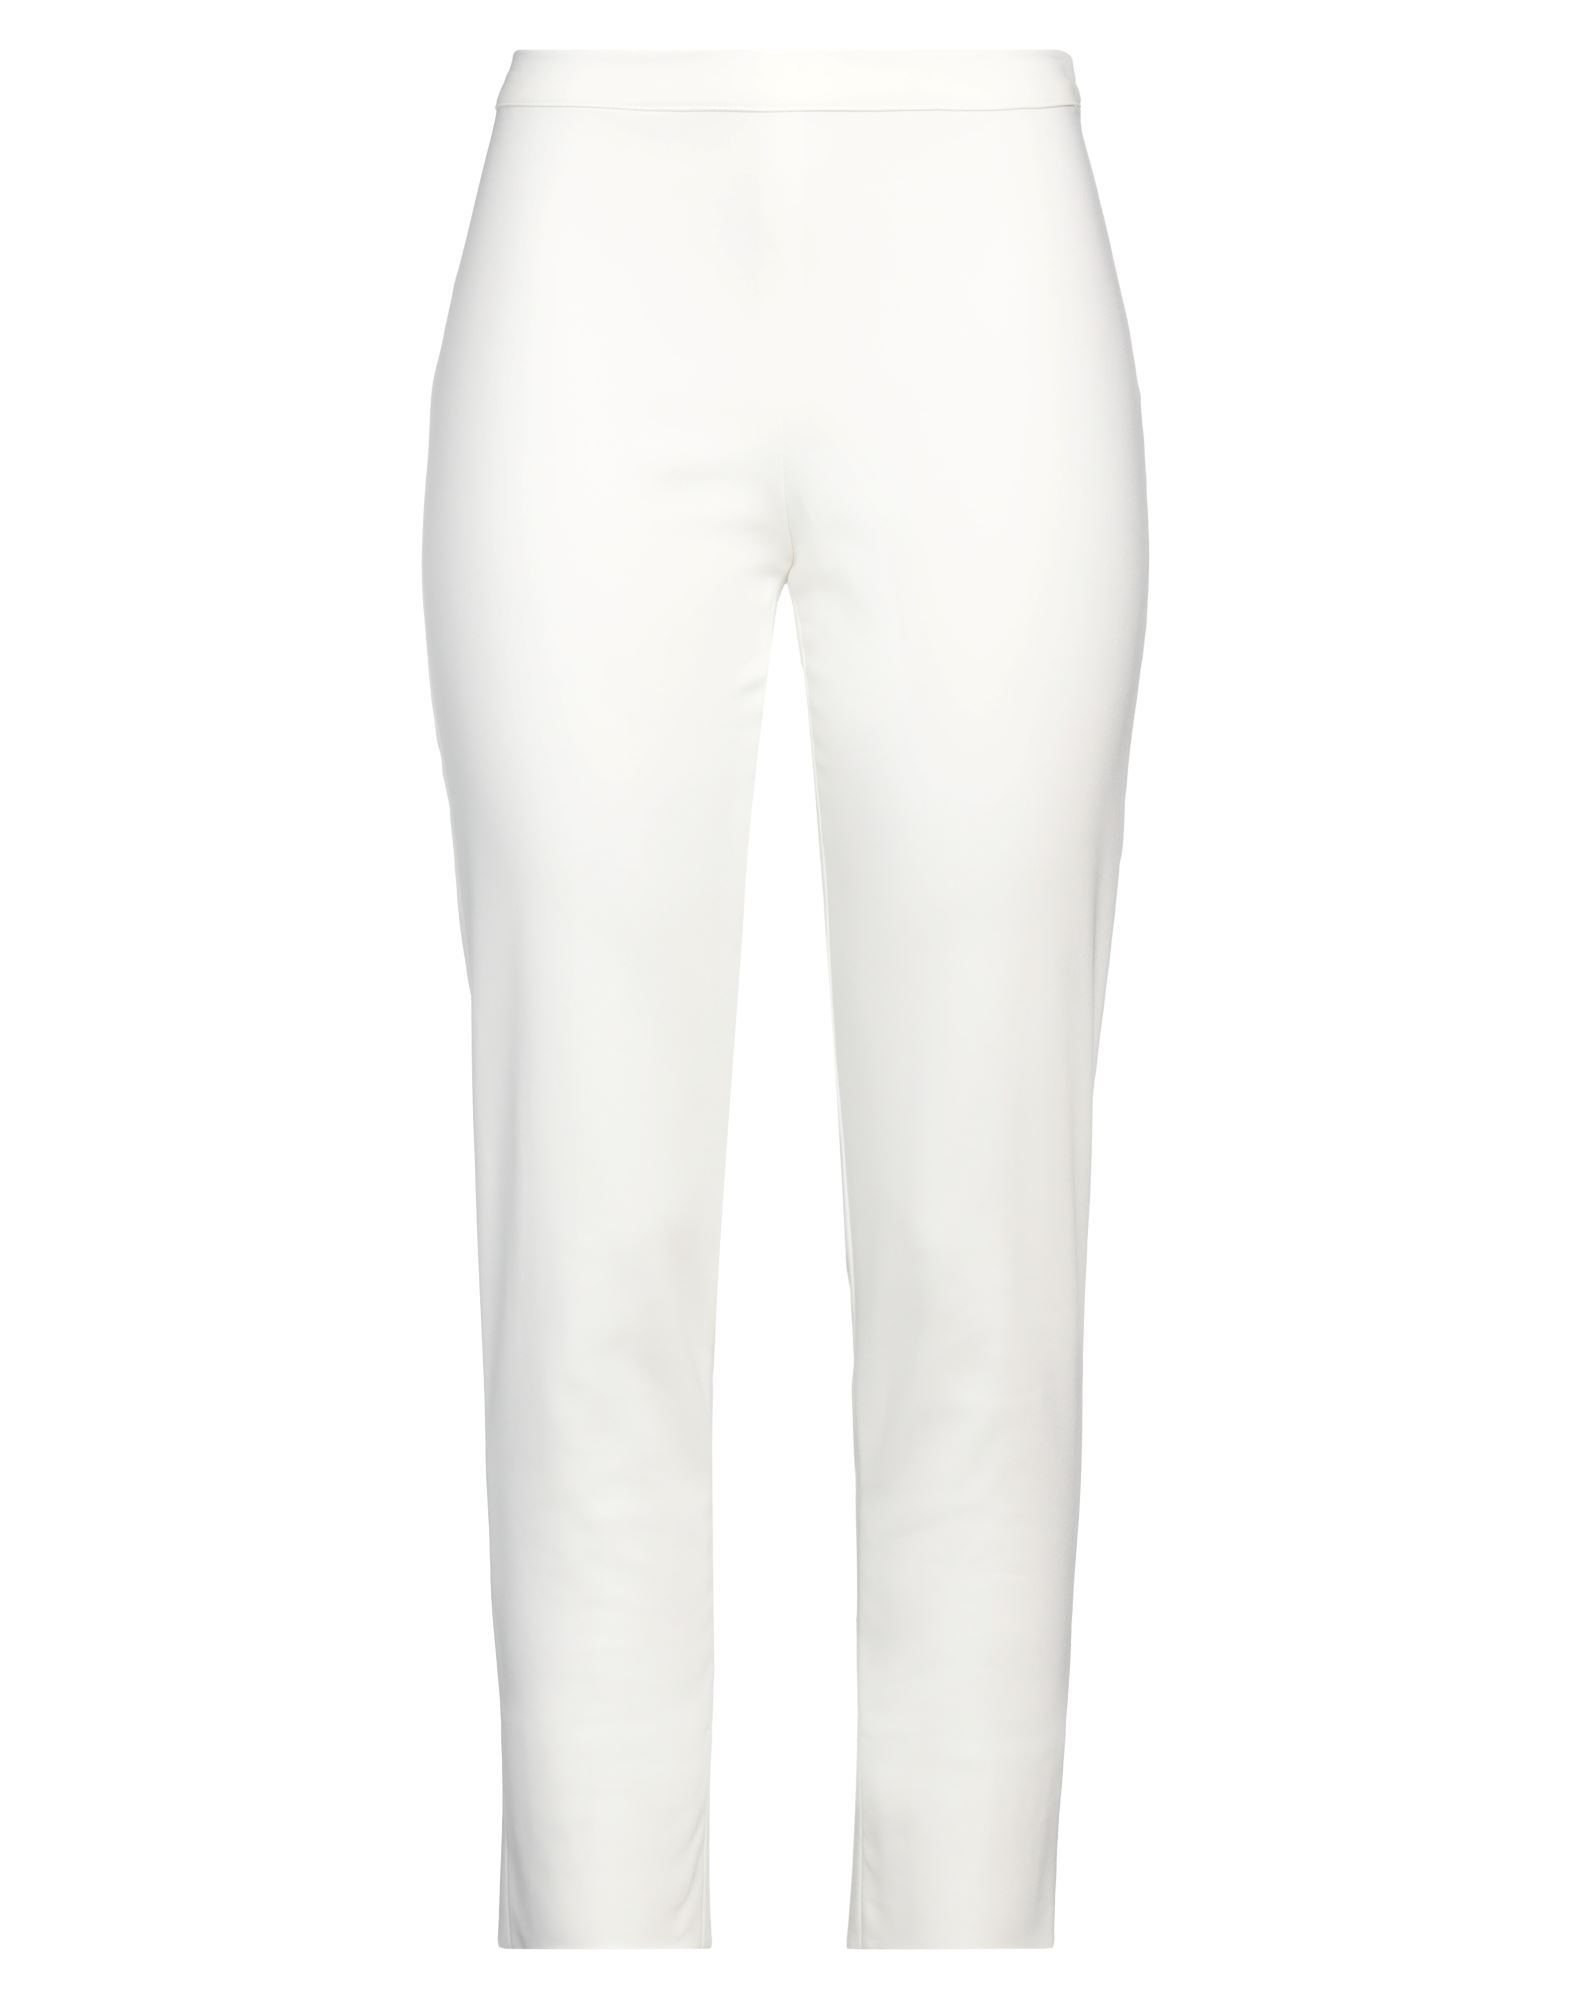 Diana Gallesi Woman Pants White Size 6 Cotton, Polyamide, Elastane